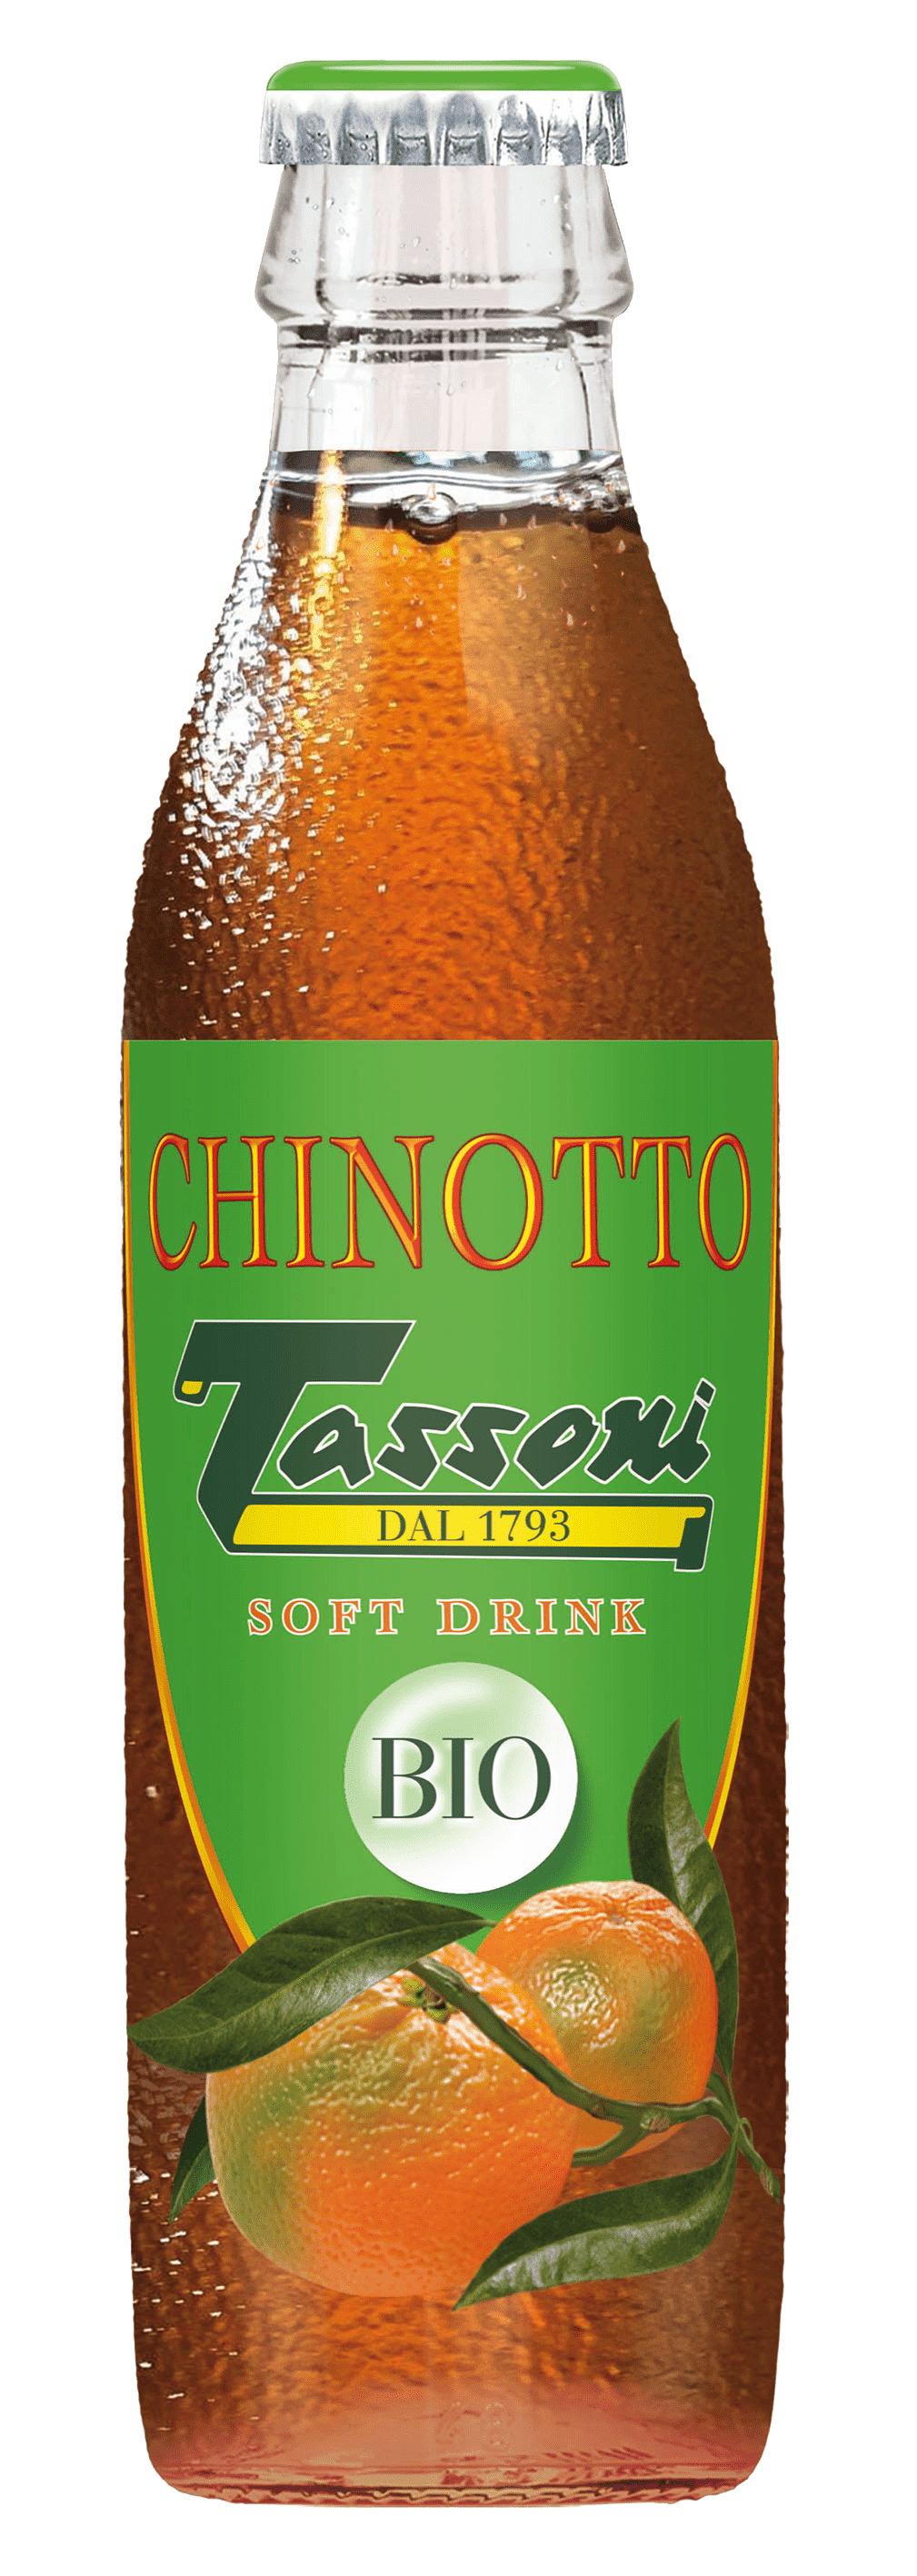 Chinotto Bio tassoni: il profumo della Sicilia in bottiglia